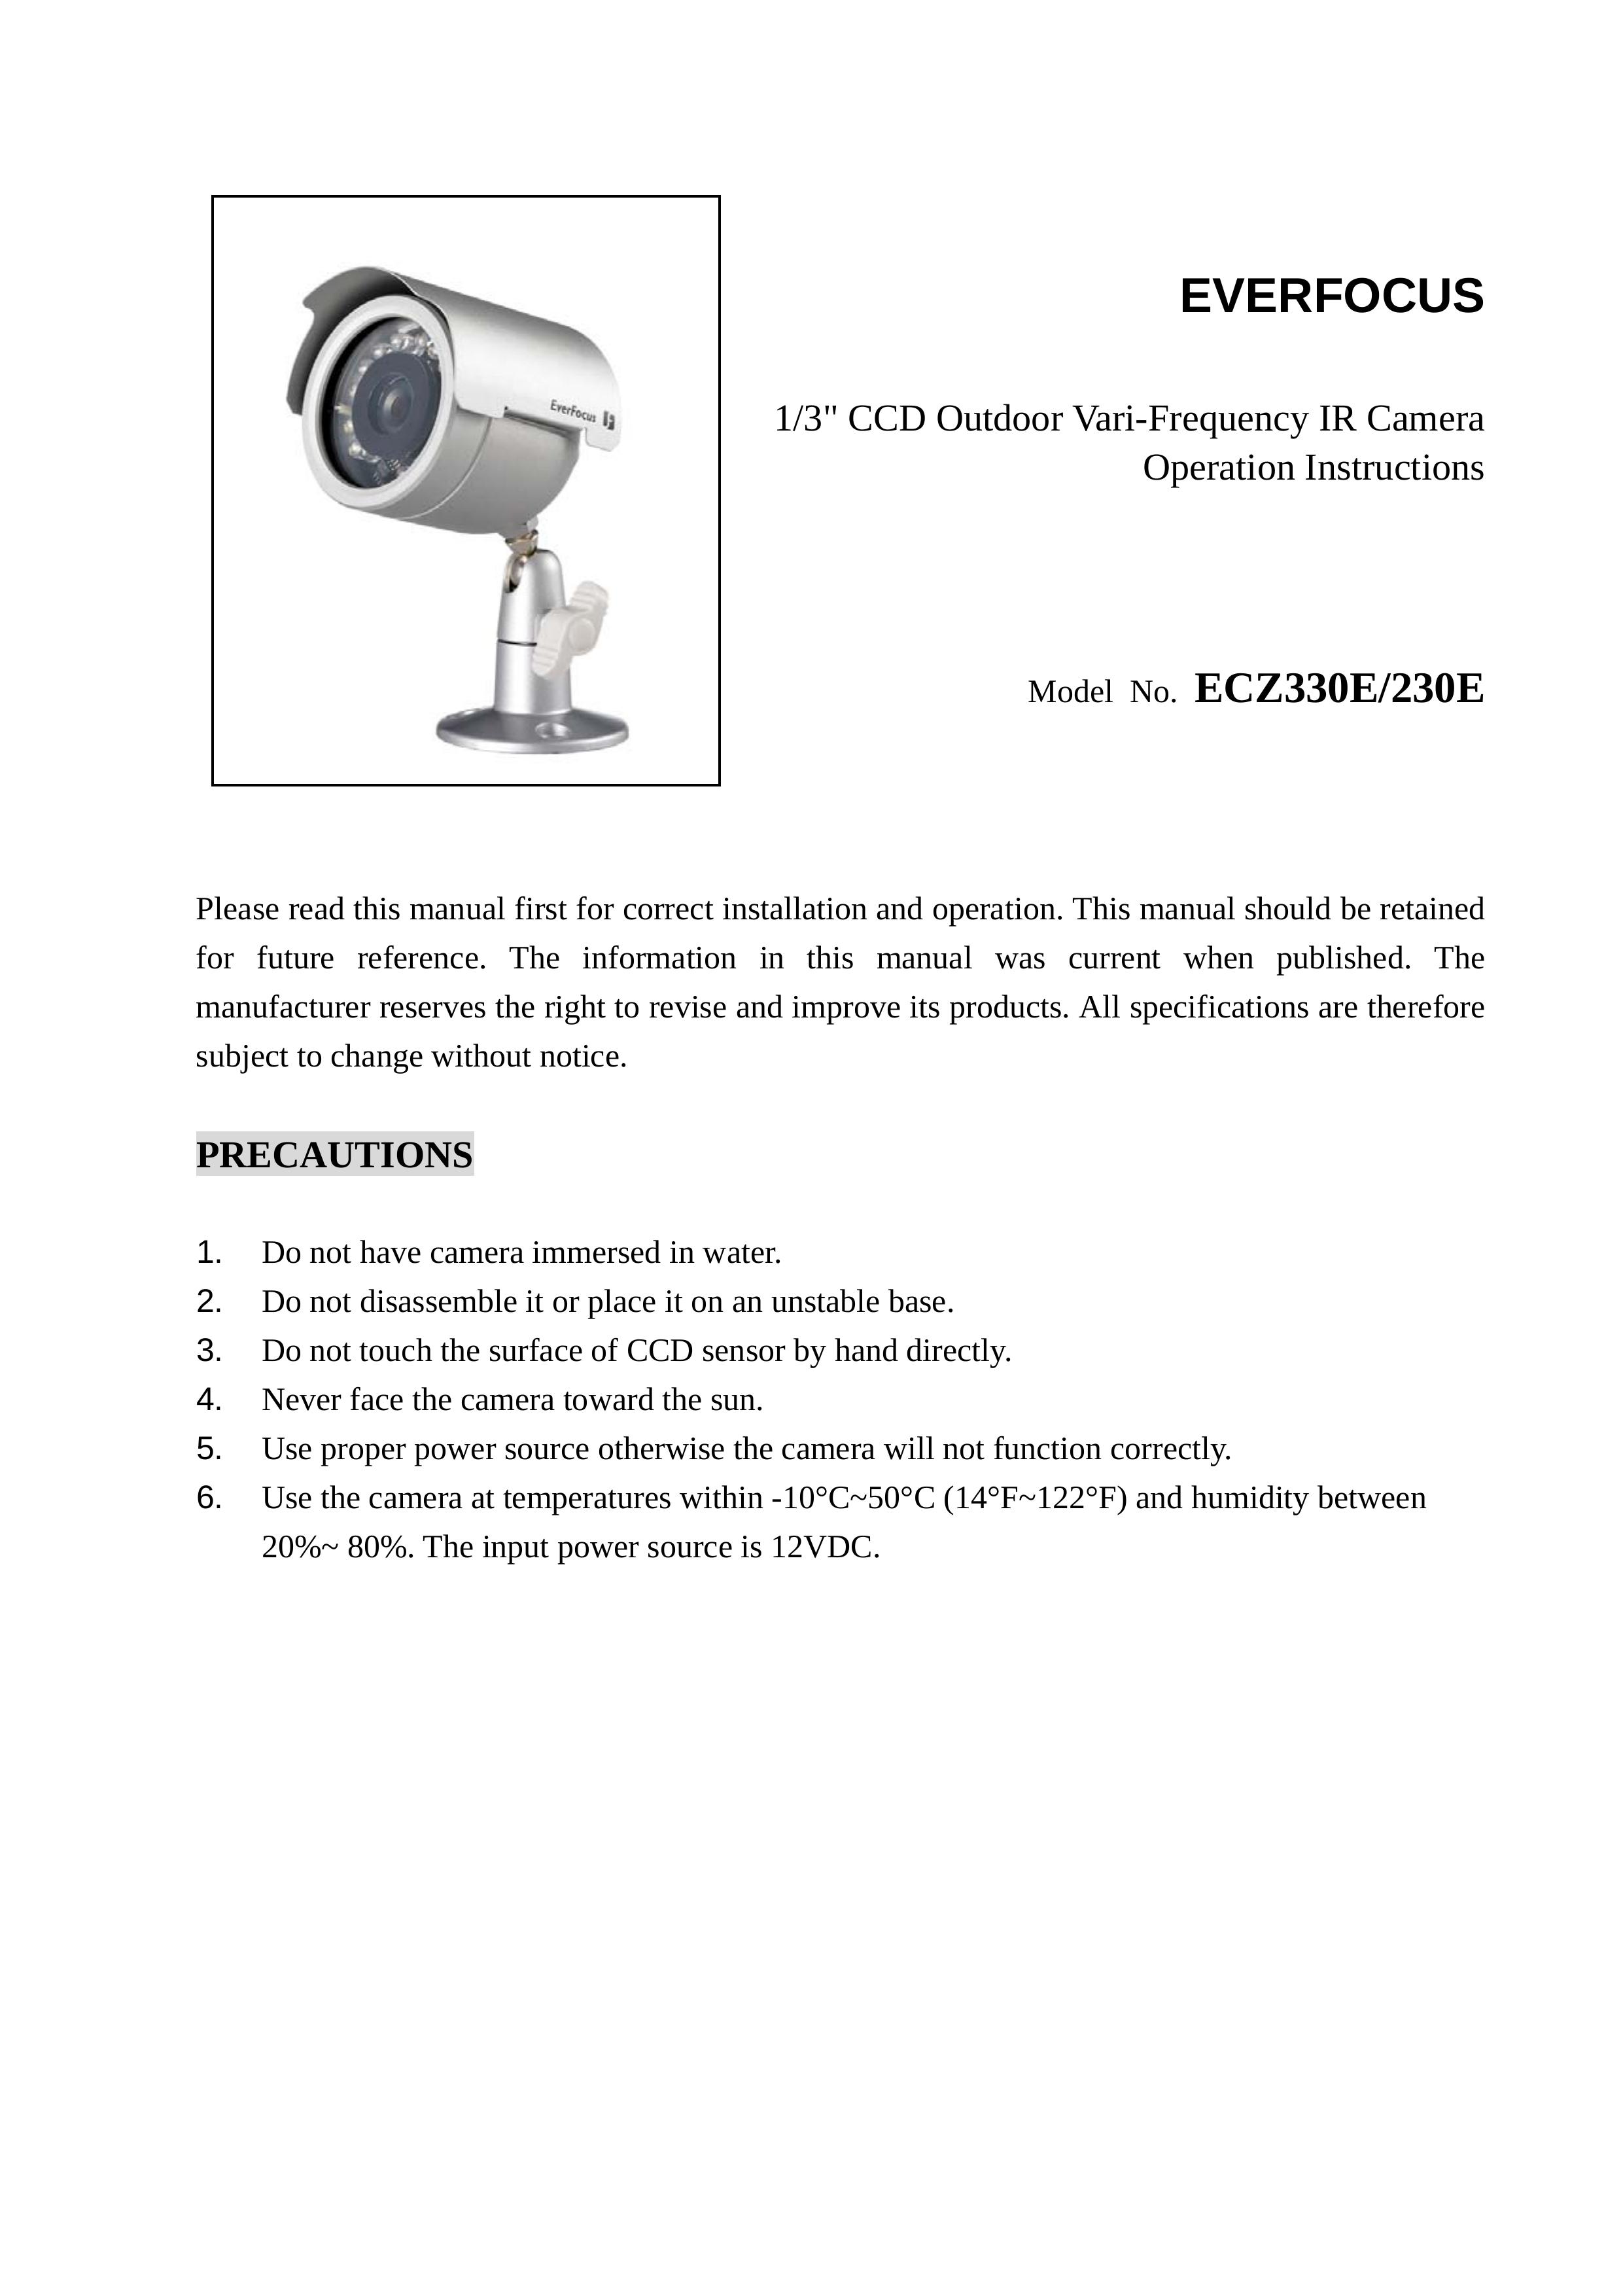 EverFocus ECZ230E Security Camera User Manual